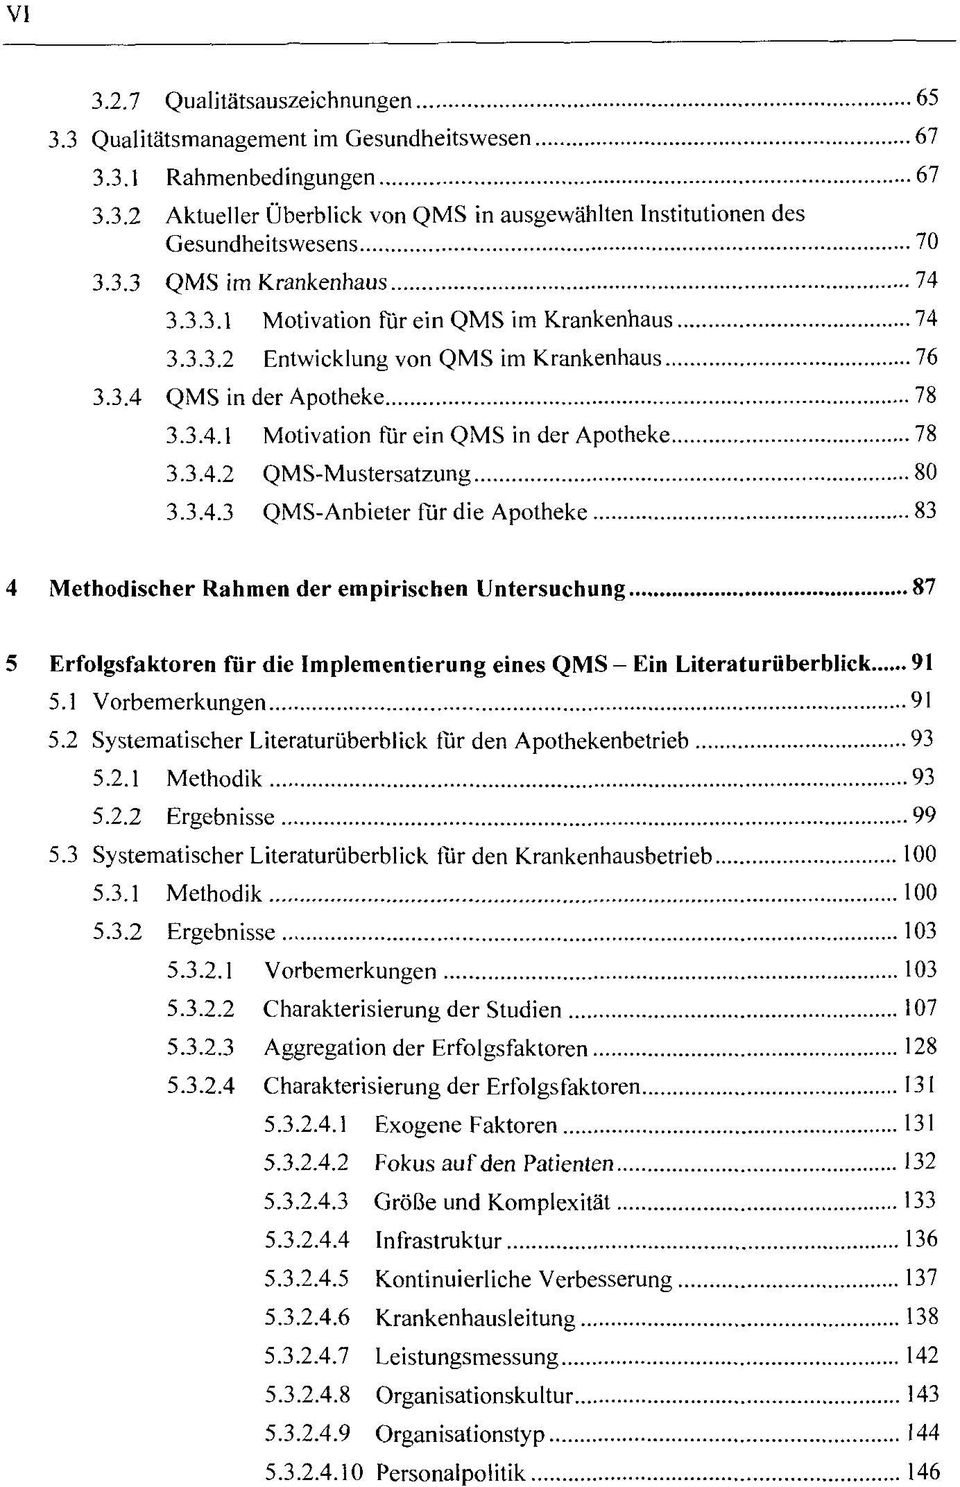 3.4.2 QMS-Mustersatzung 80 3.3.4.3 QMS-Anbieter für die Apotheke 83 4 Methodischer Rahmen der empirischen Untersuchung 87 5 Erfolgsfaktoren für die Implementierung eines QMS - Ein Literaturüberblick 91 5.